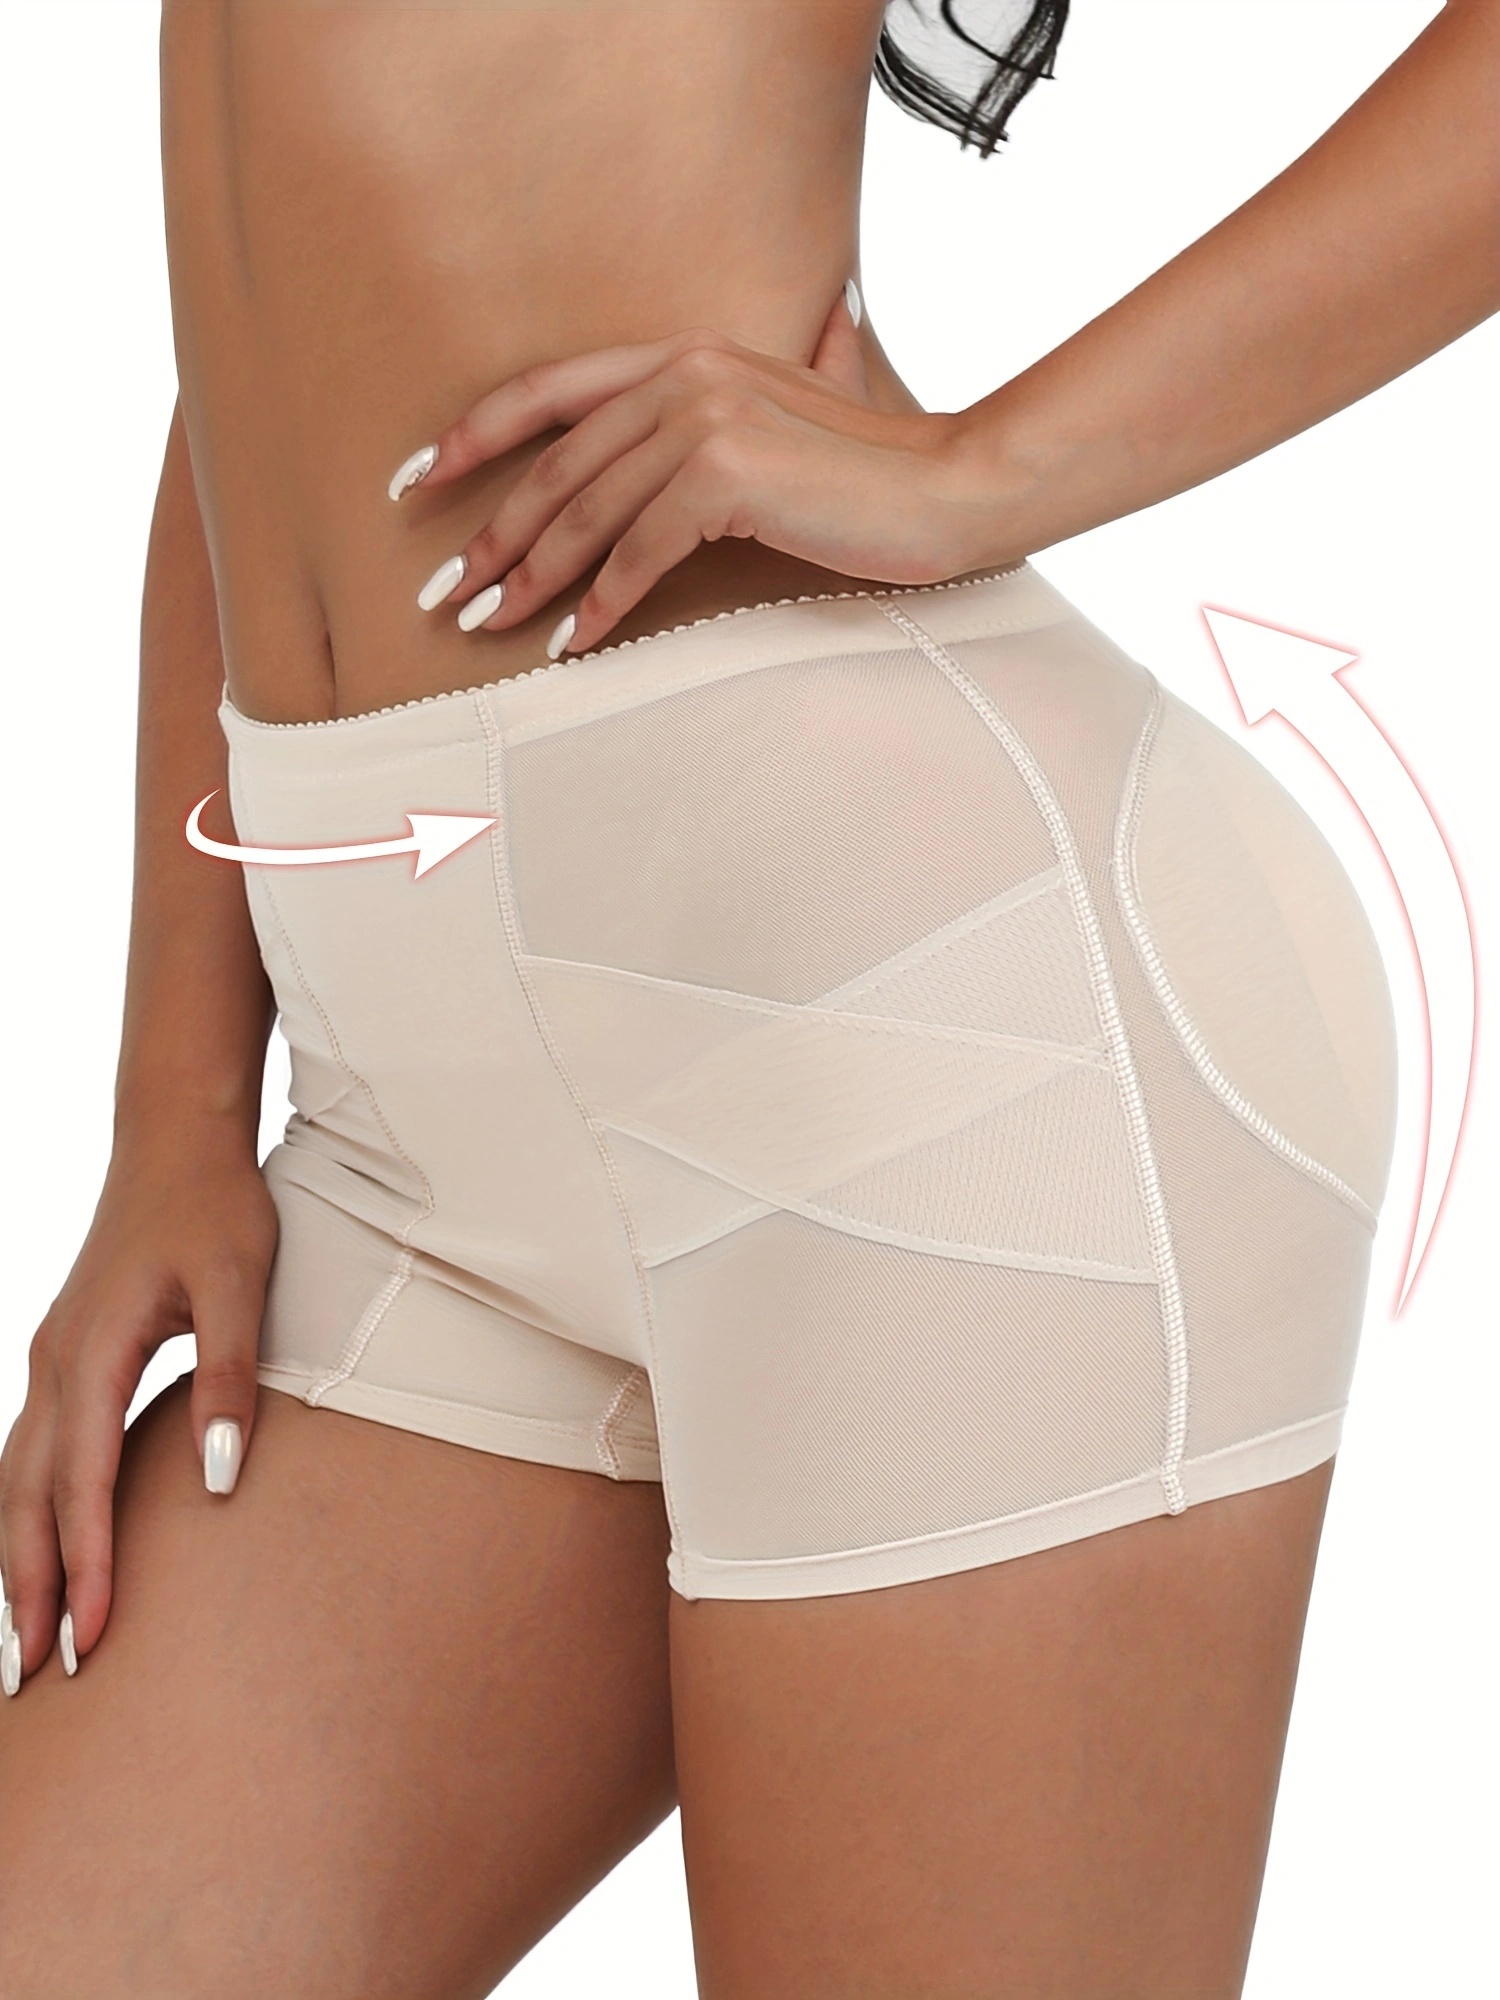 Biwiti Womens Seamless Butt Lifter Padded Panties Enhancer